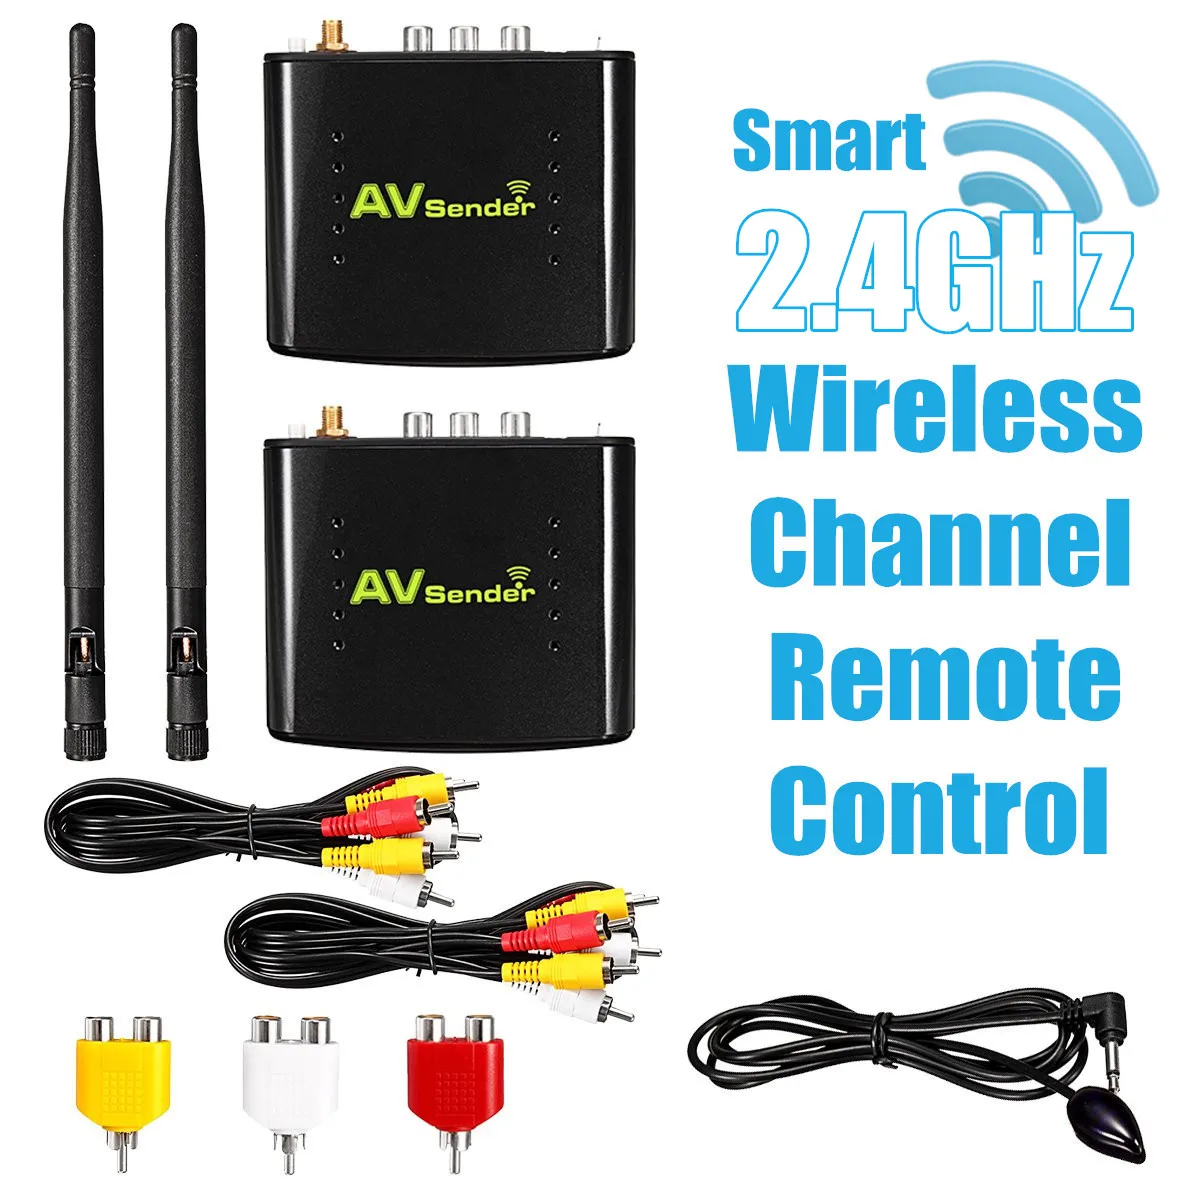 

Wireless AV Transmitter Receiver Set TV Broadcasting Audio Video Sender Sharer Remote Extender Kit Equipment 2.4GHz 350M/1148ft